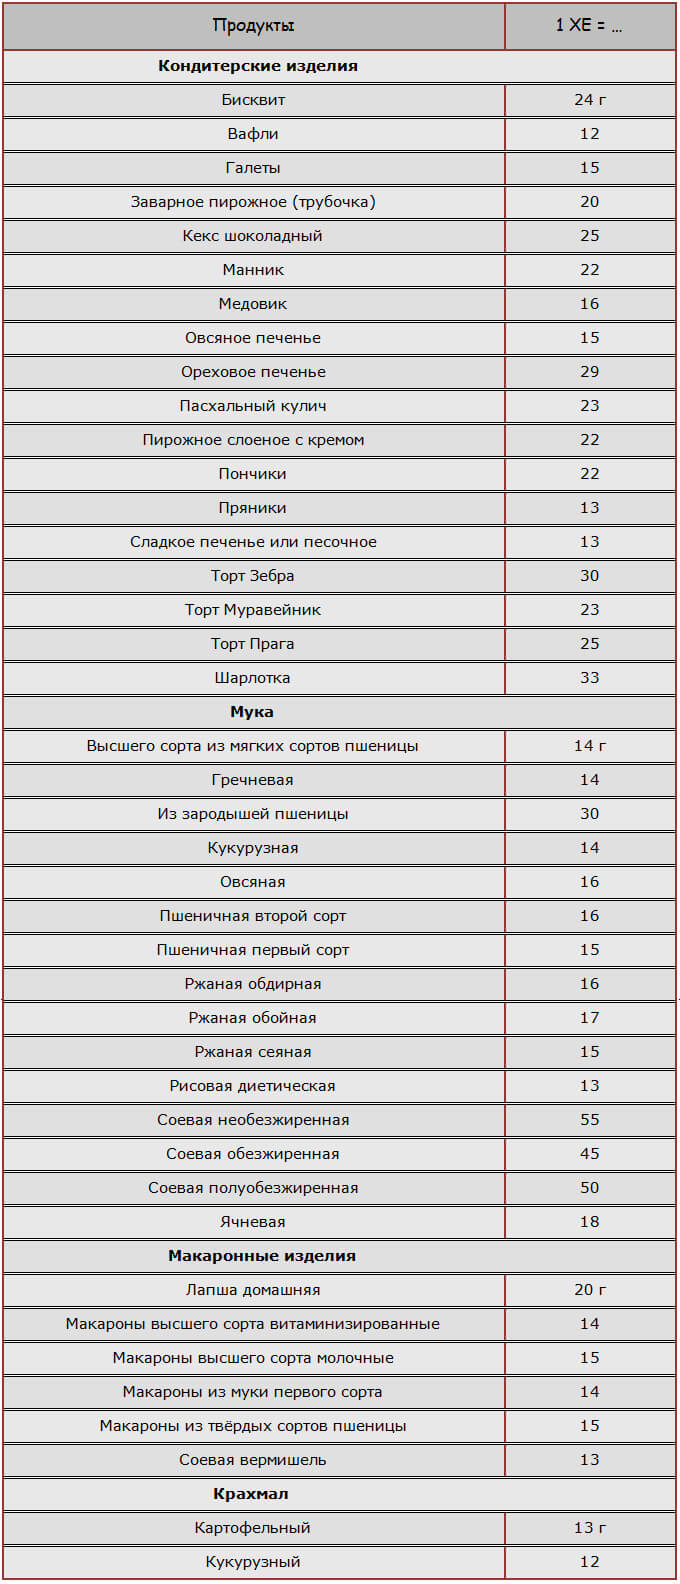 Таблица ХЕ для мучных, кондитерских изделий, выпечки